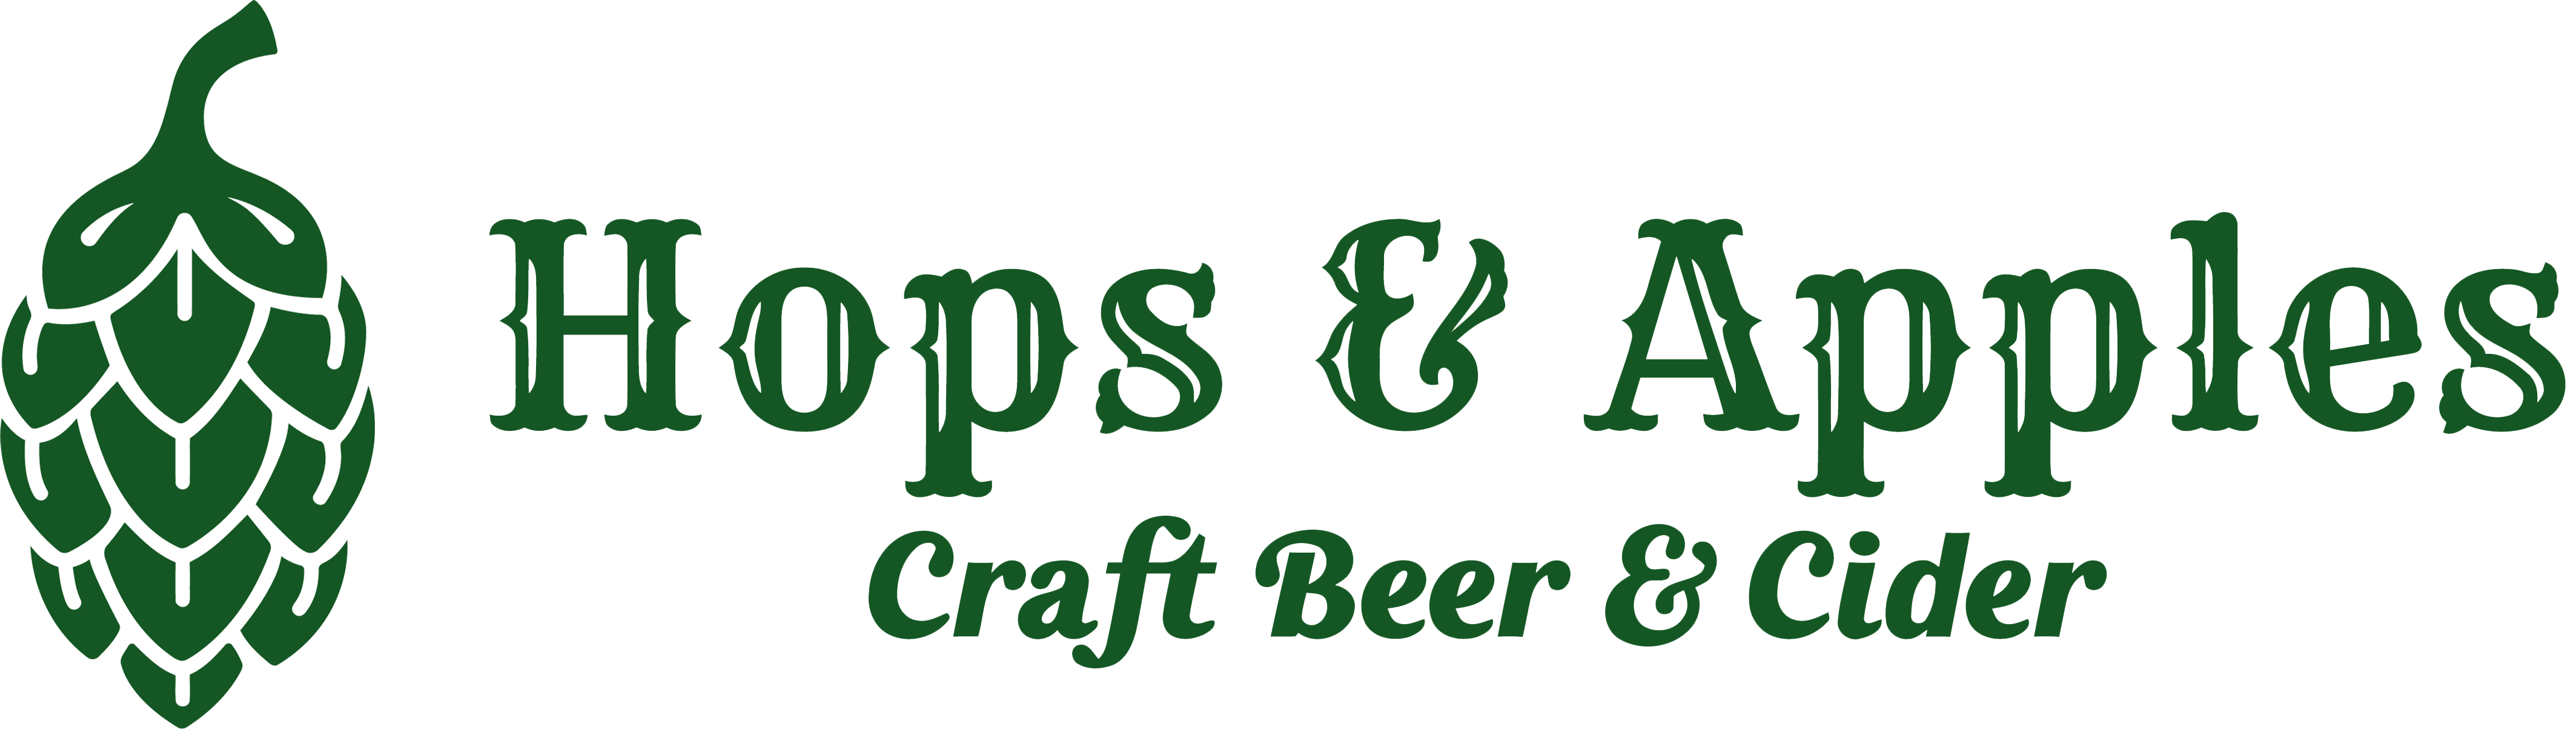 Hops & Apples Ltd logo